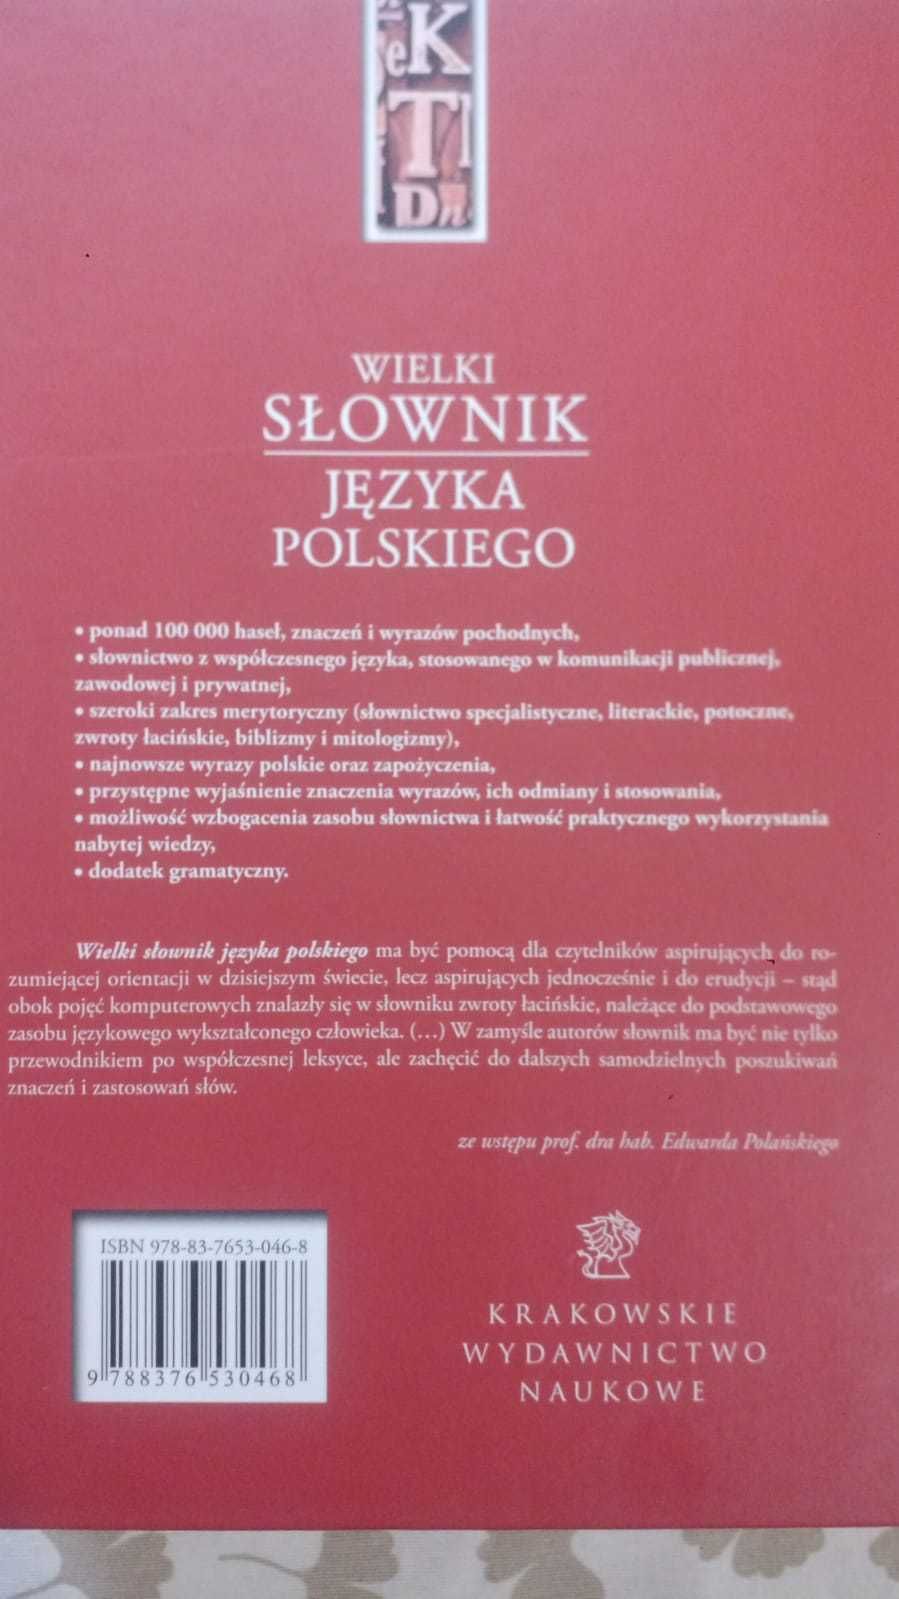 Wielki Słownik Języka Polskiego